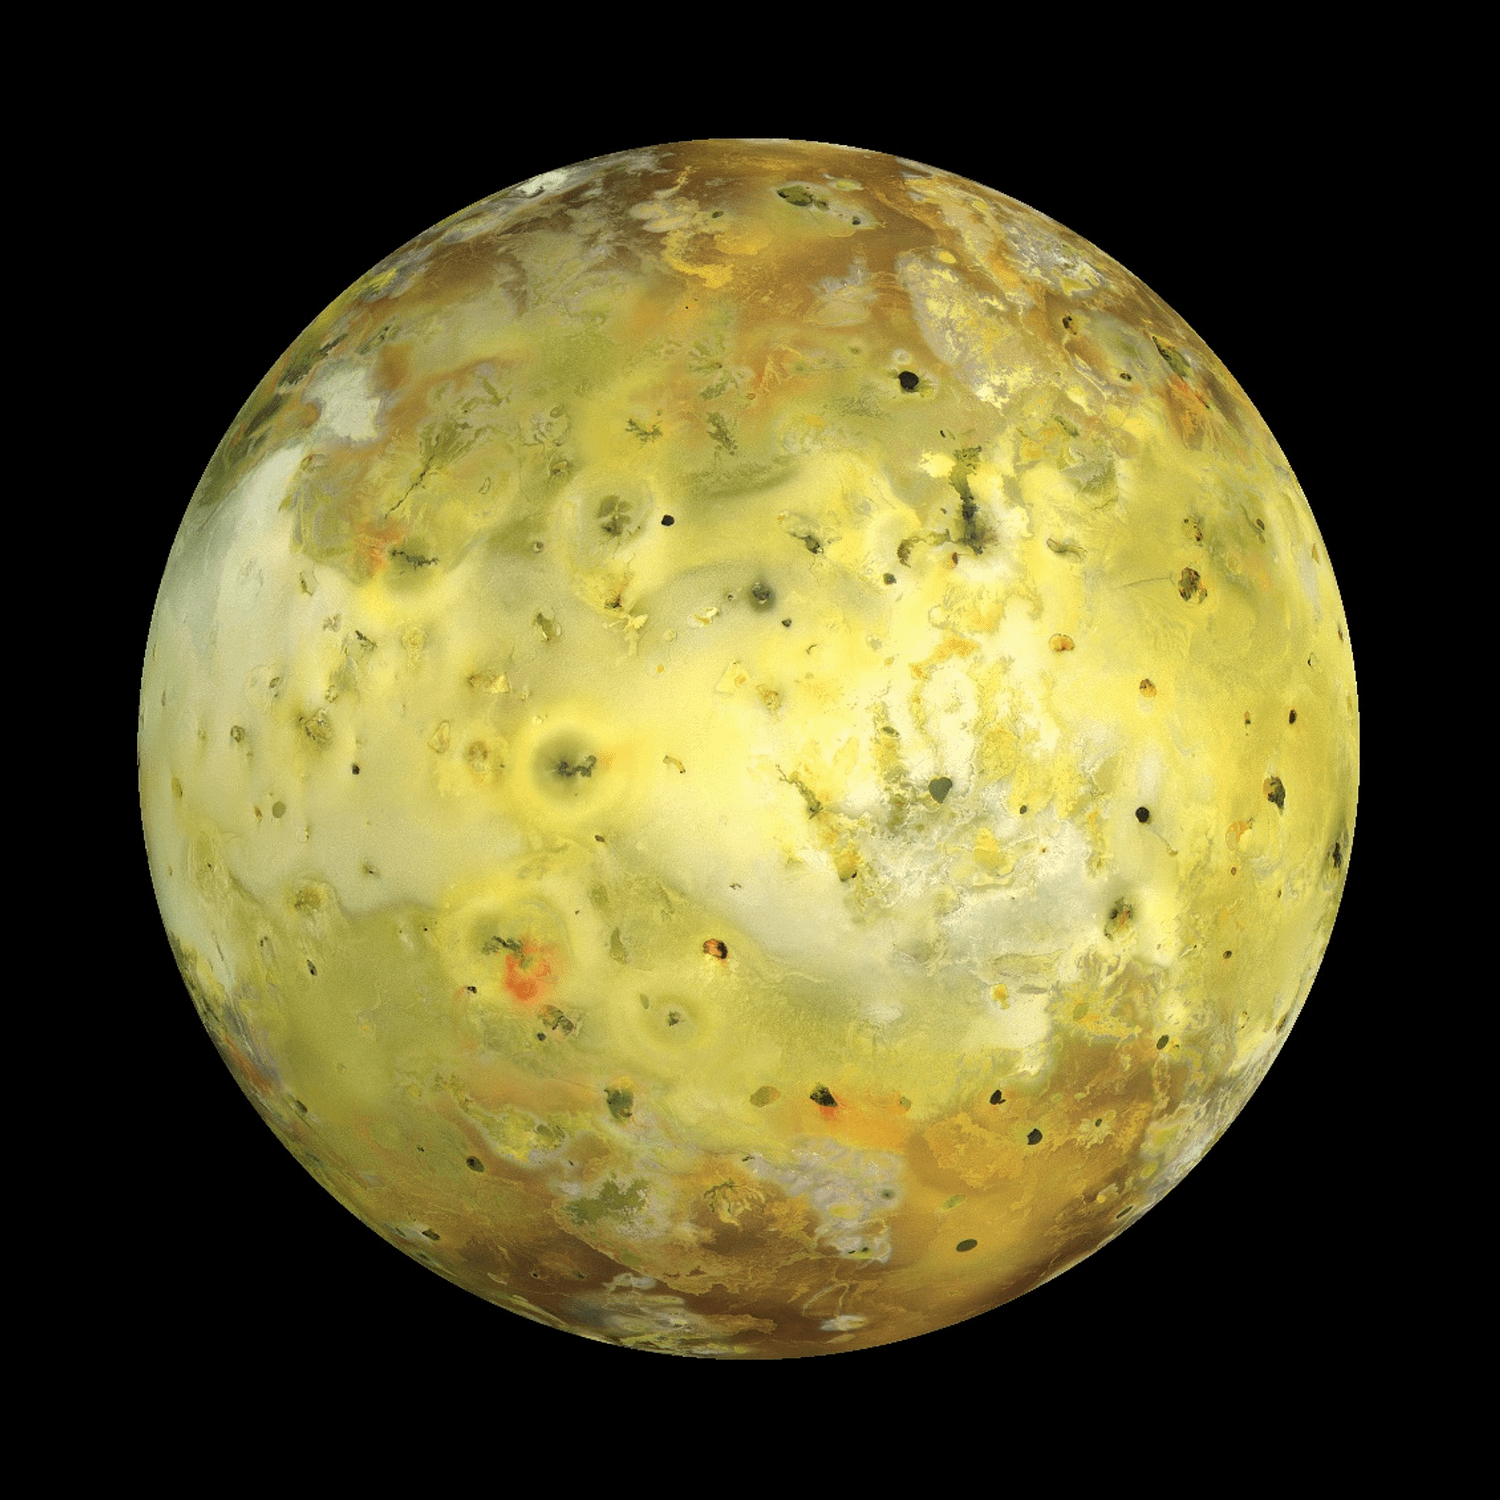 Bolygós rövidhírek: küldetés az Io felé